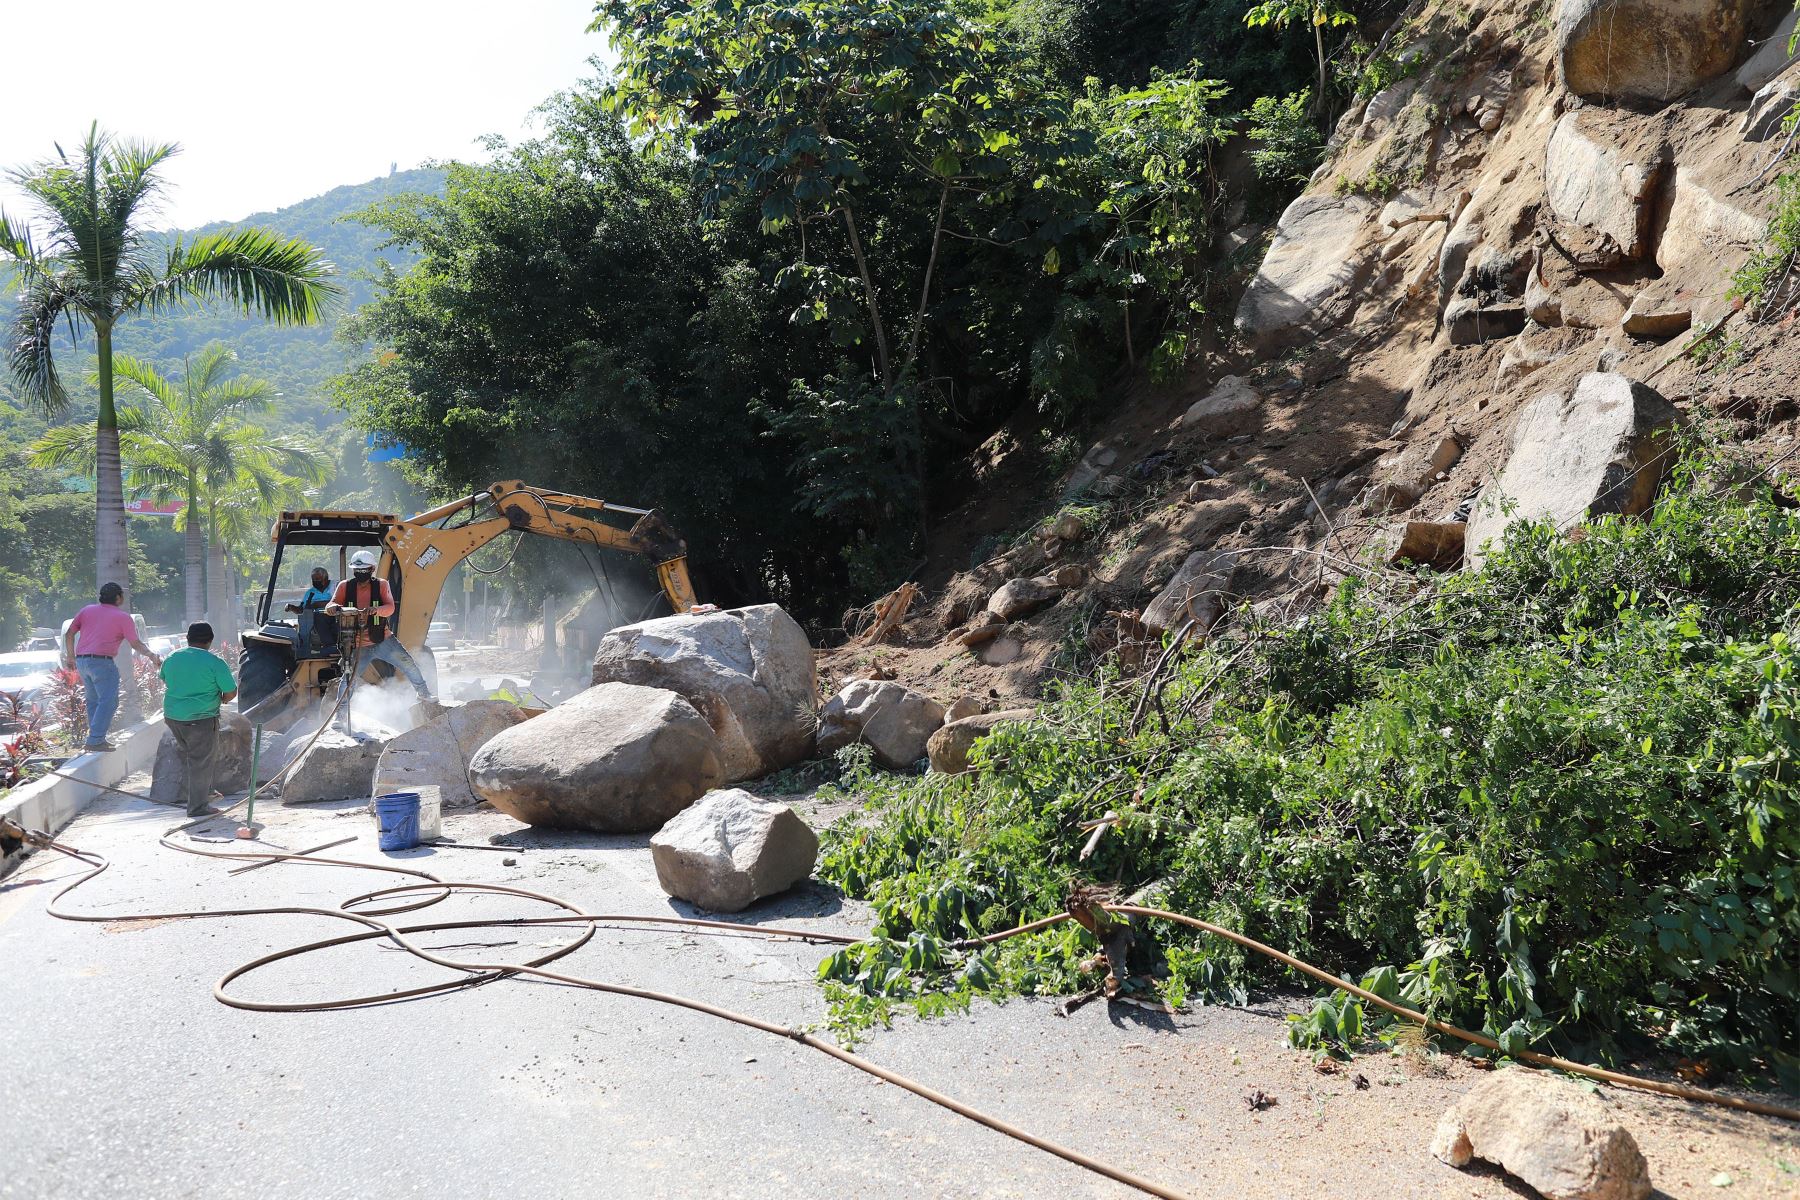 Personal de obras públicas retiró escombros del camino,en una de las zonas afectadas por el sismo en el balneario de Acapulco en el estado de Guerrero, en México.
Foto: EFE